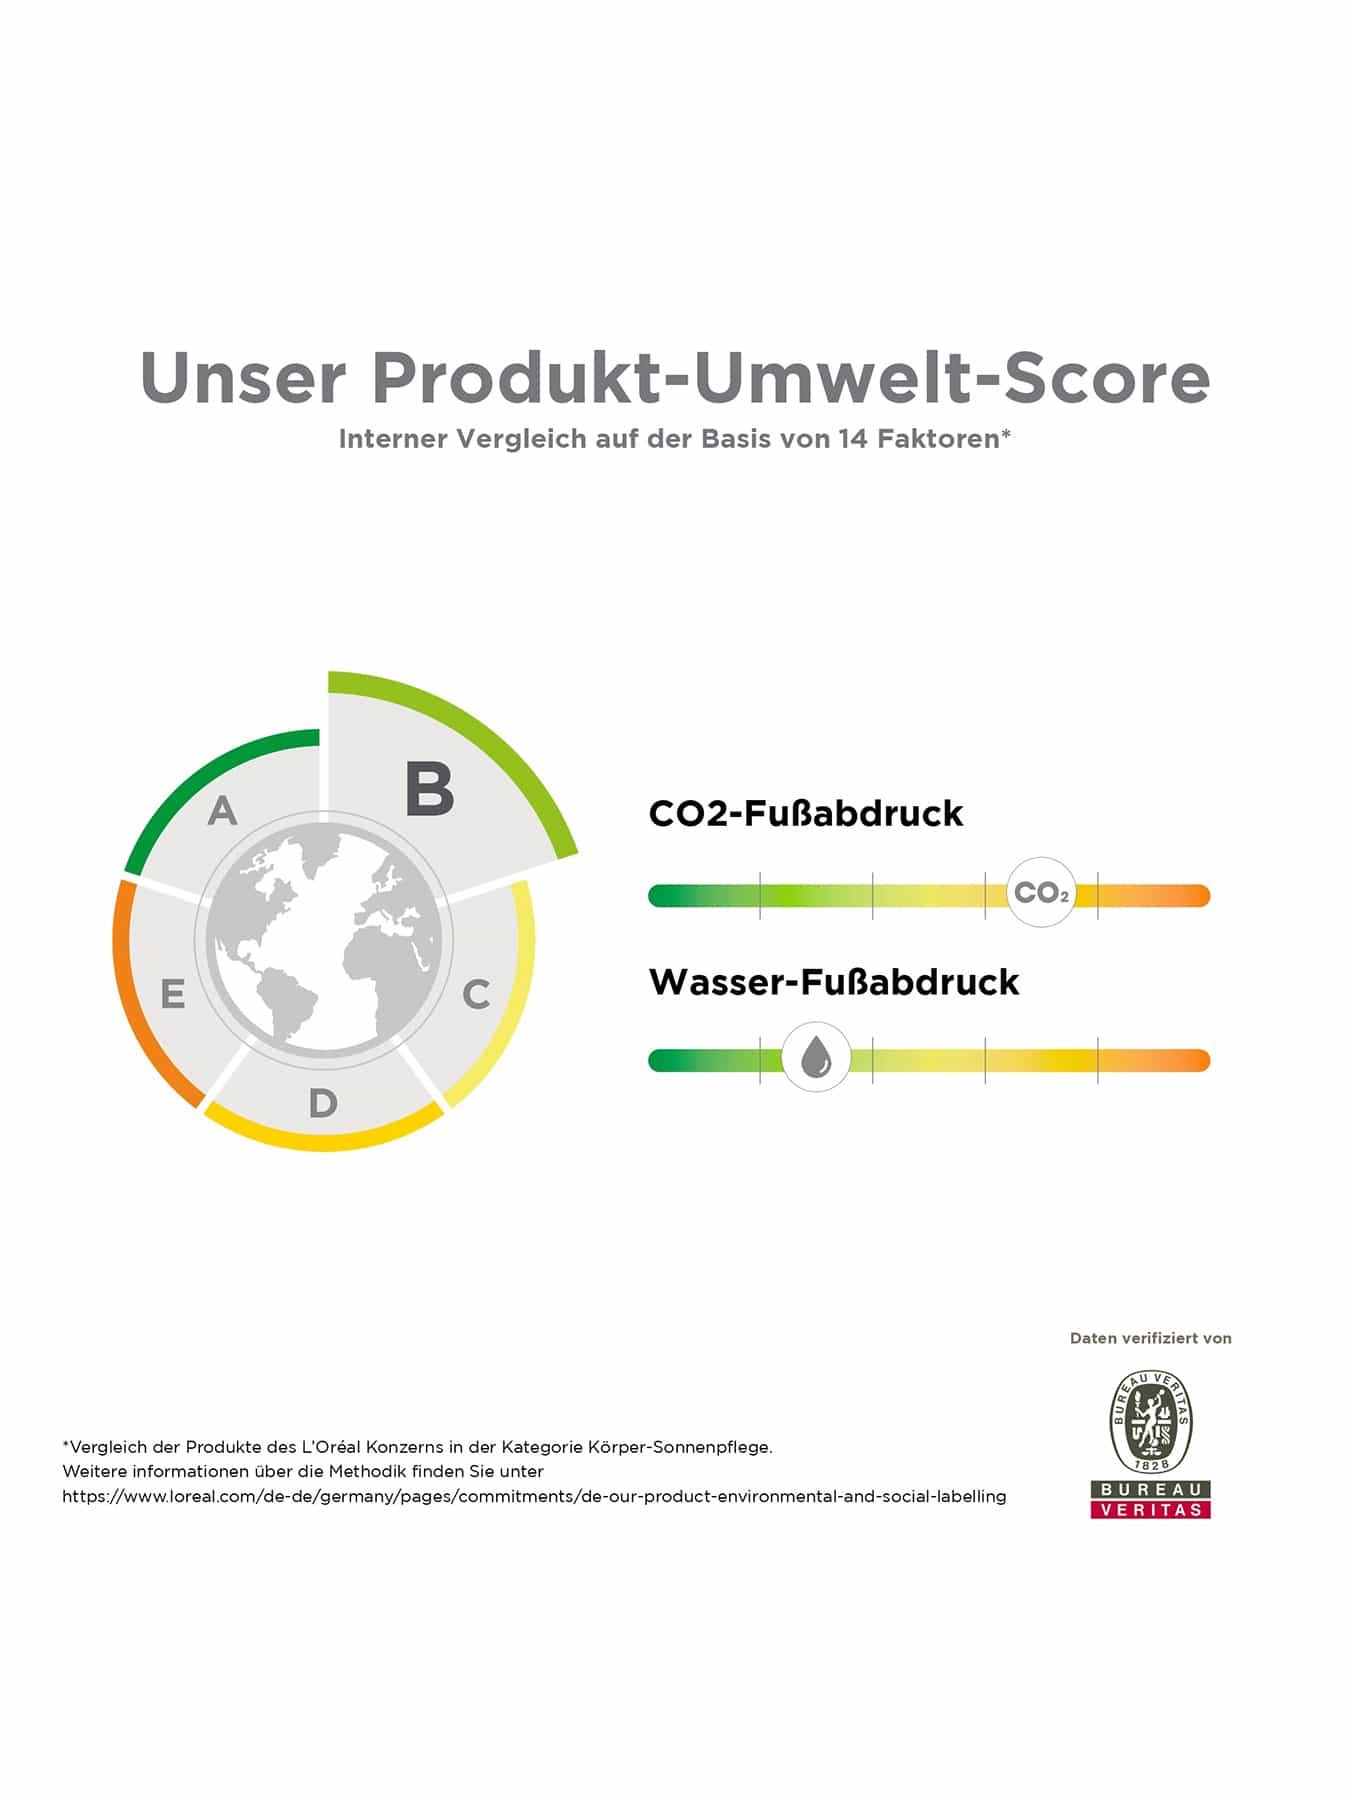 Ambre Solaire Sensitive expert+ Gesicht Gel-Creme LSF 50+ - Produkt-Umwelt-Score